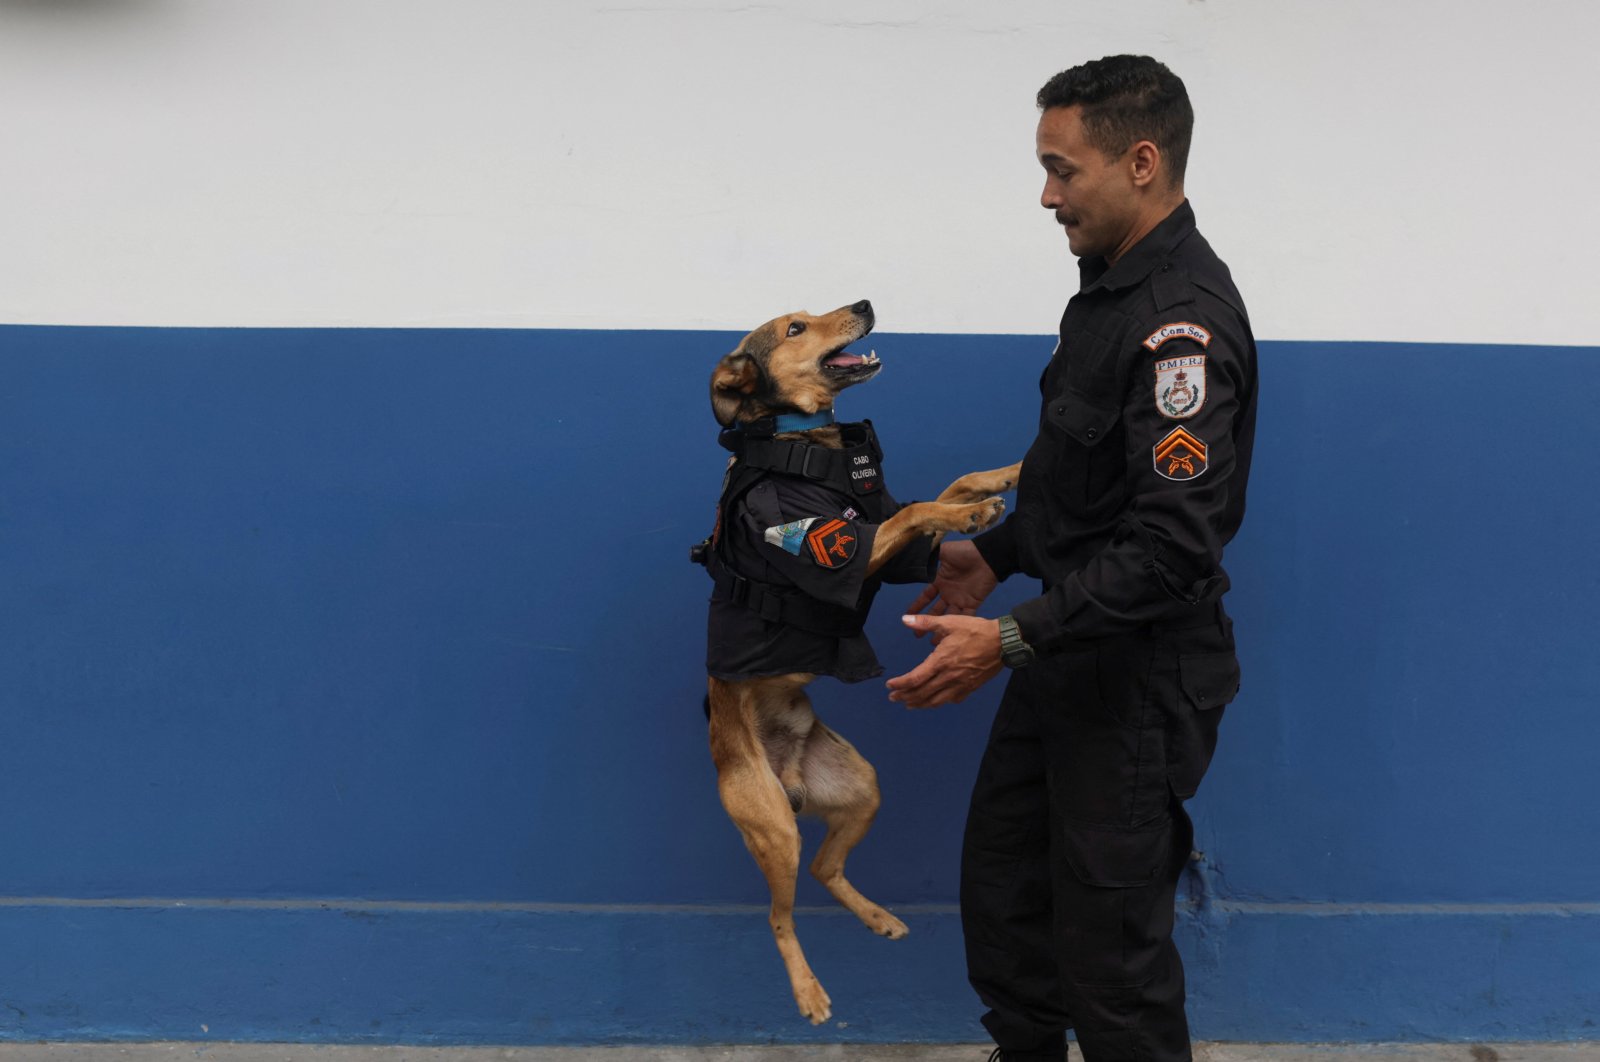 Anjing penyelamat Brasil menjadi maskot polisi berbulu, sensasi internet